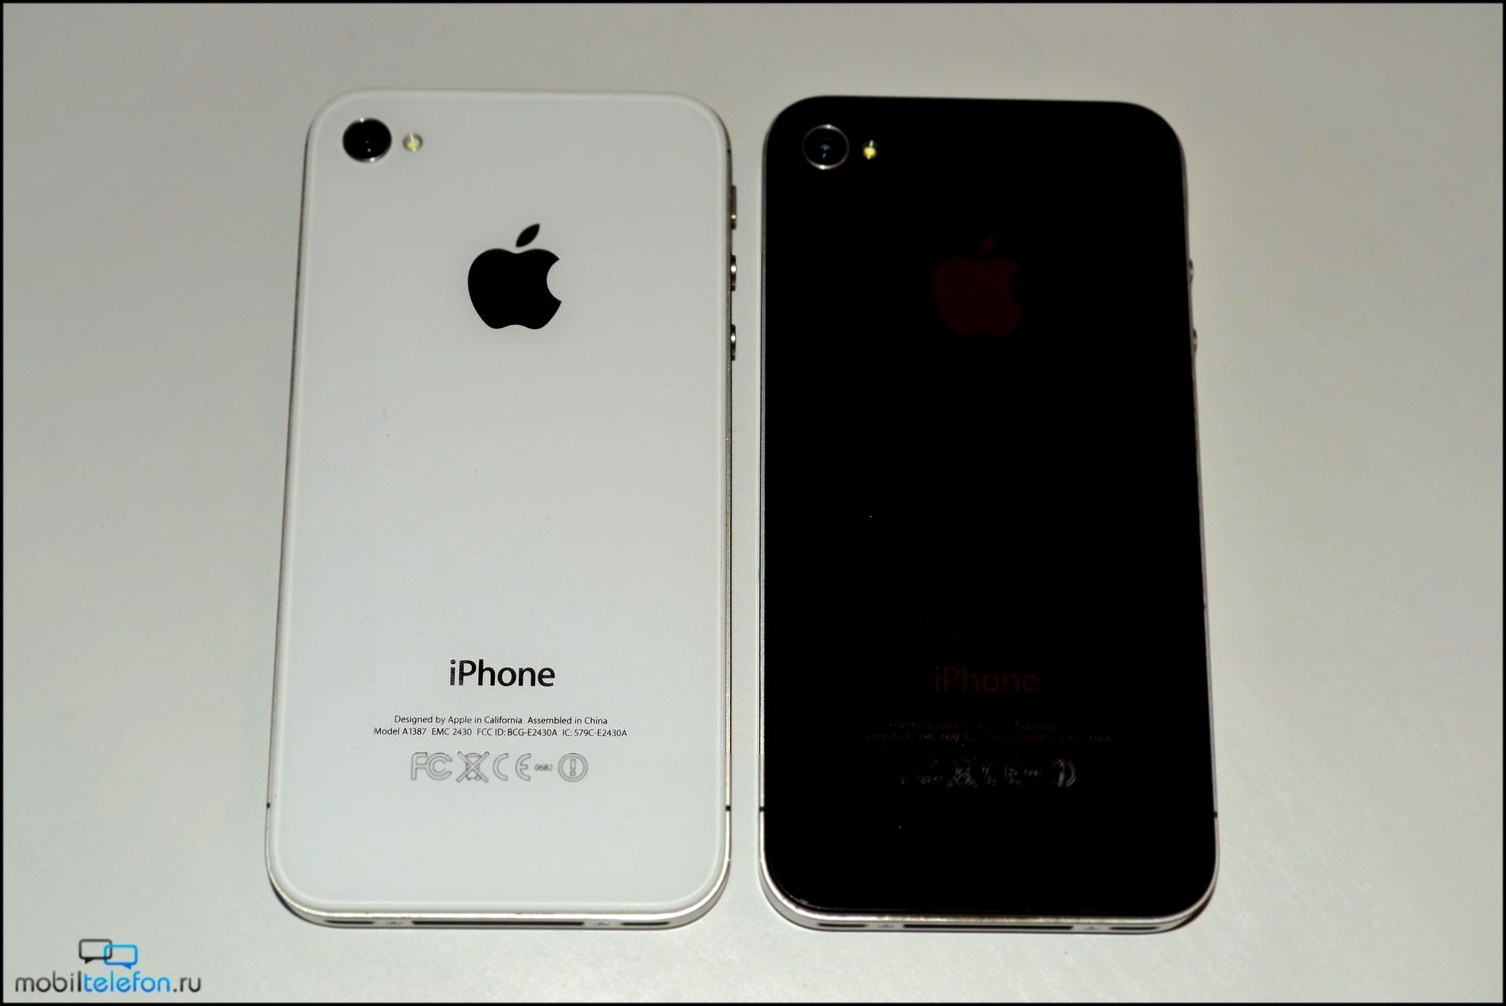 Iphone 4s отличается от iphone 4 антенной